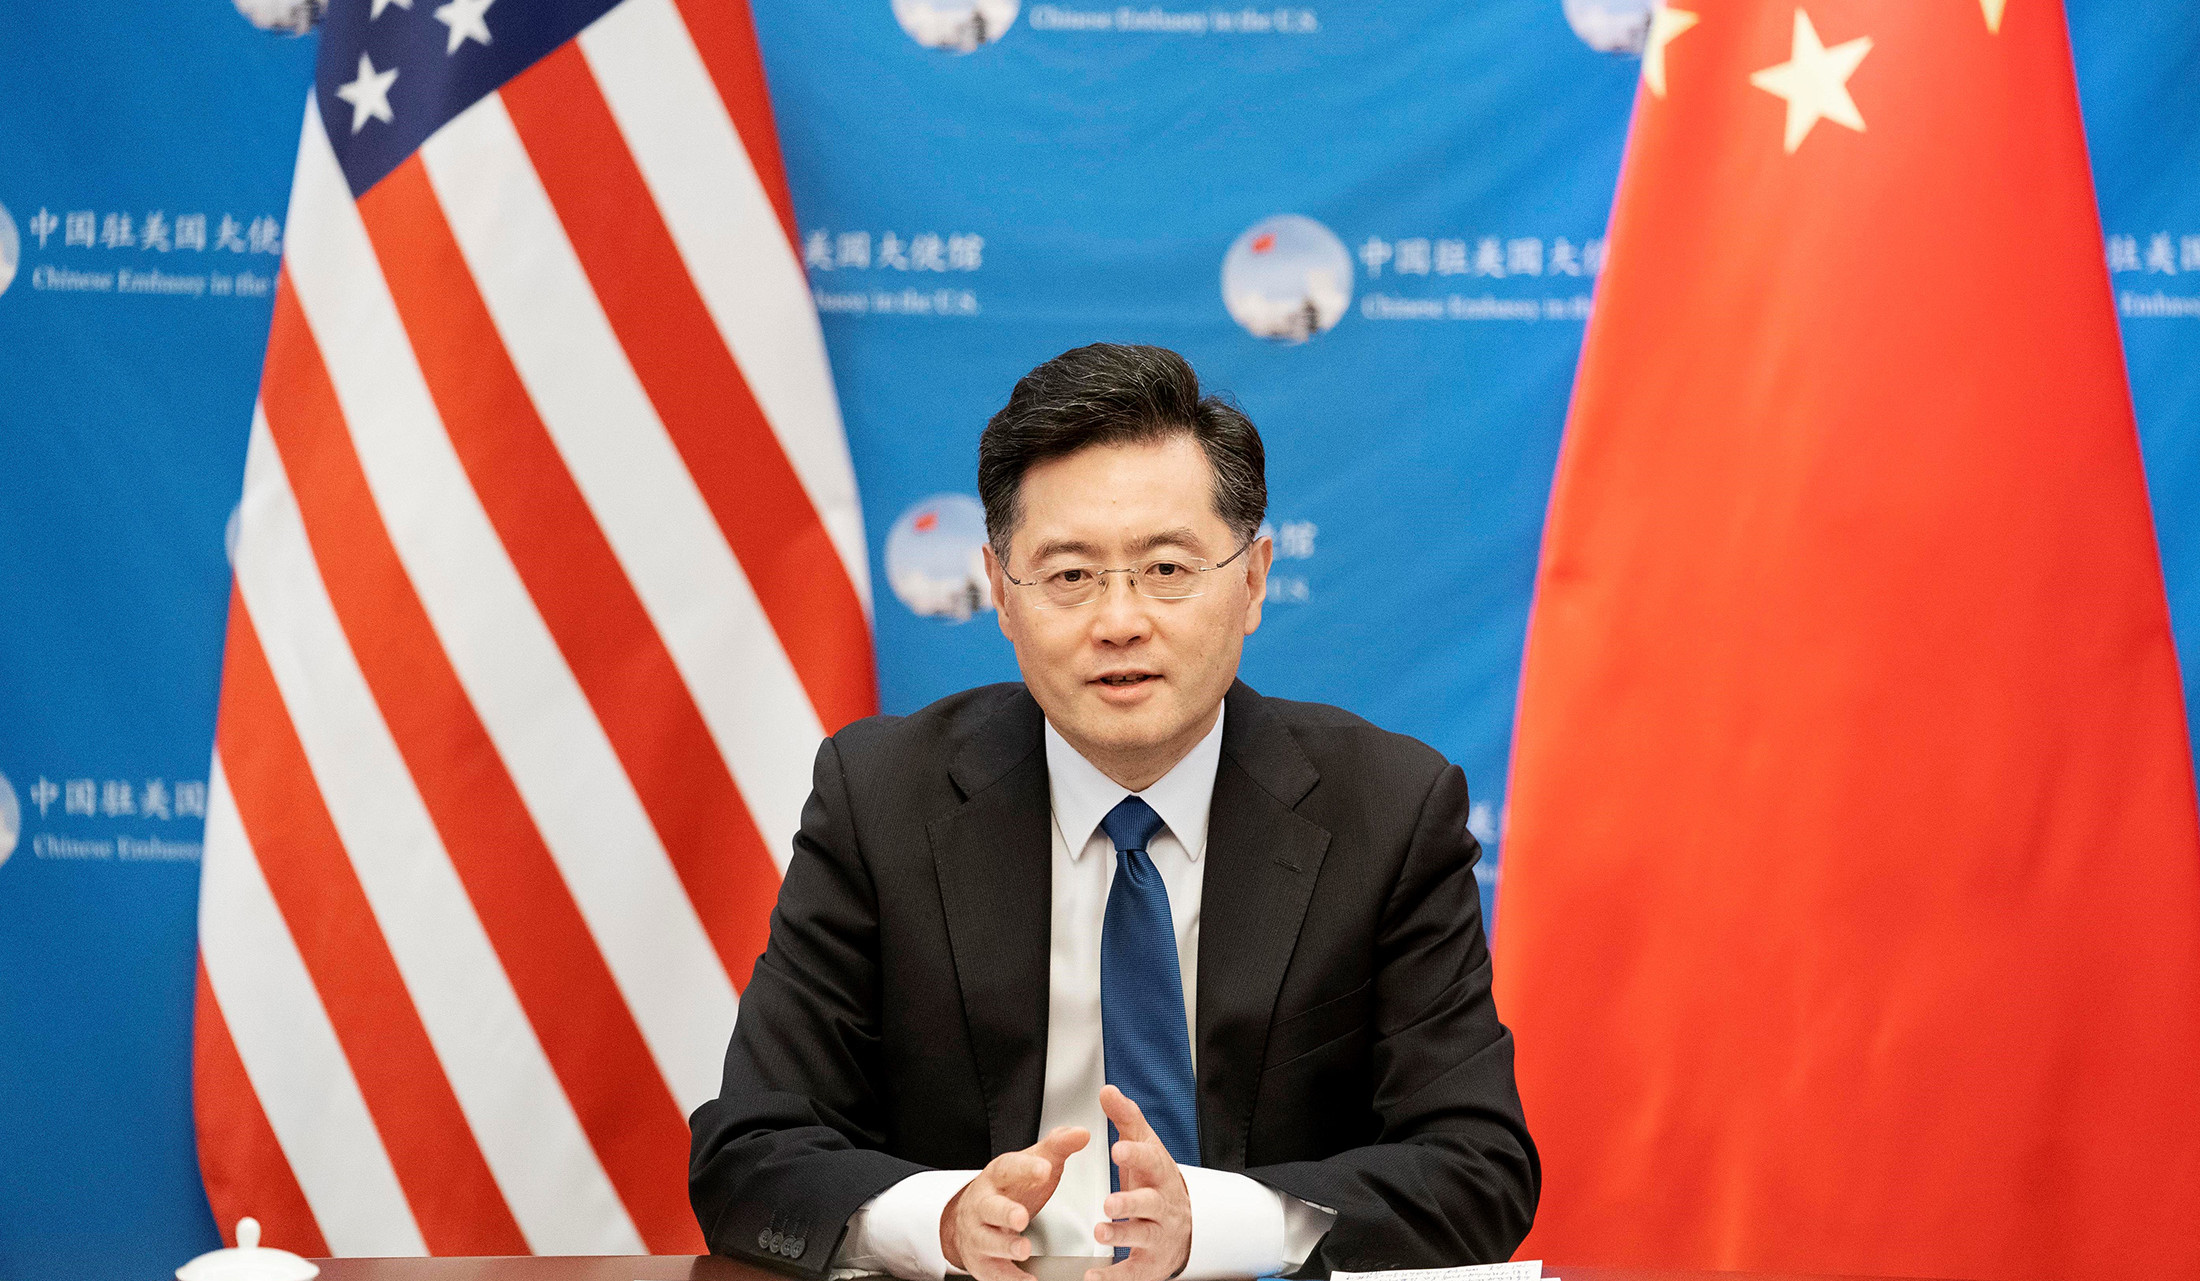 China’s U.S. Ambassador calls Taiwan potential ‘Tinderbox’: NPR